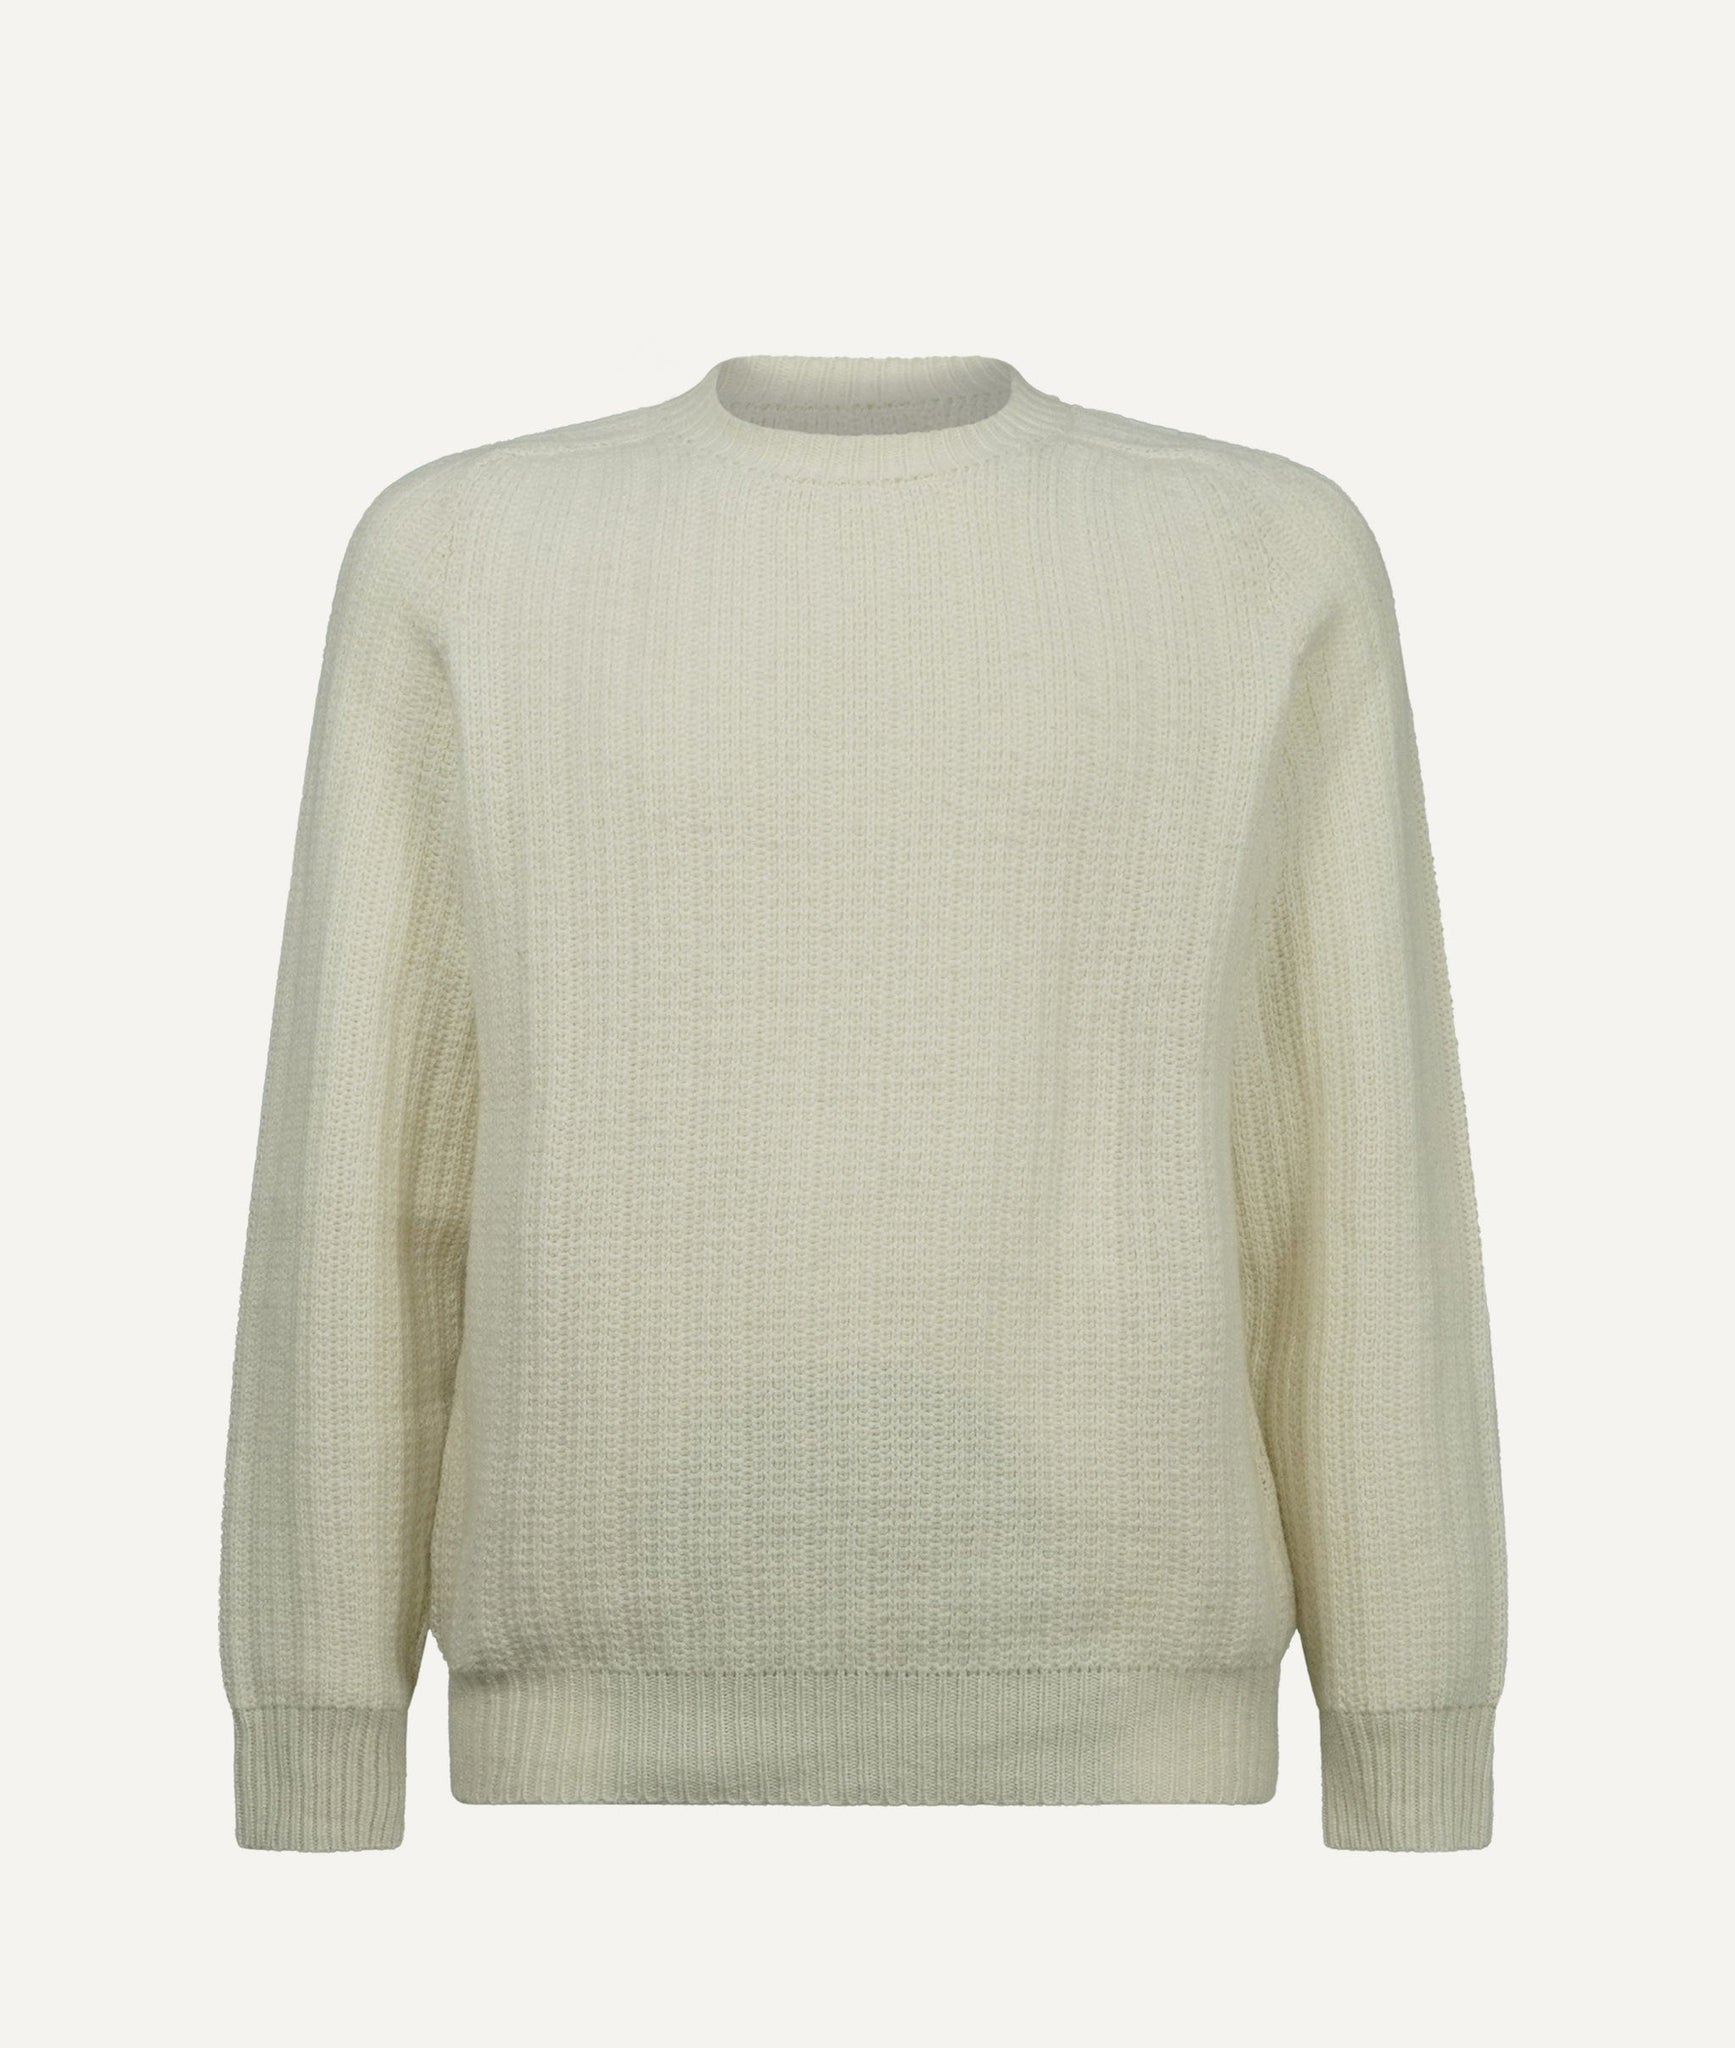 Fedeli - Sweater in Cashmere